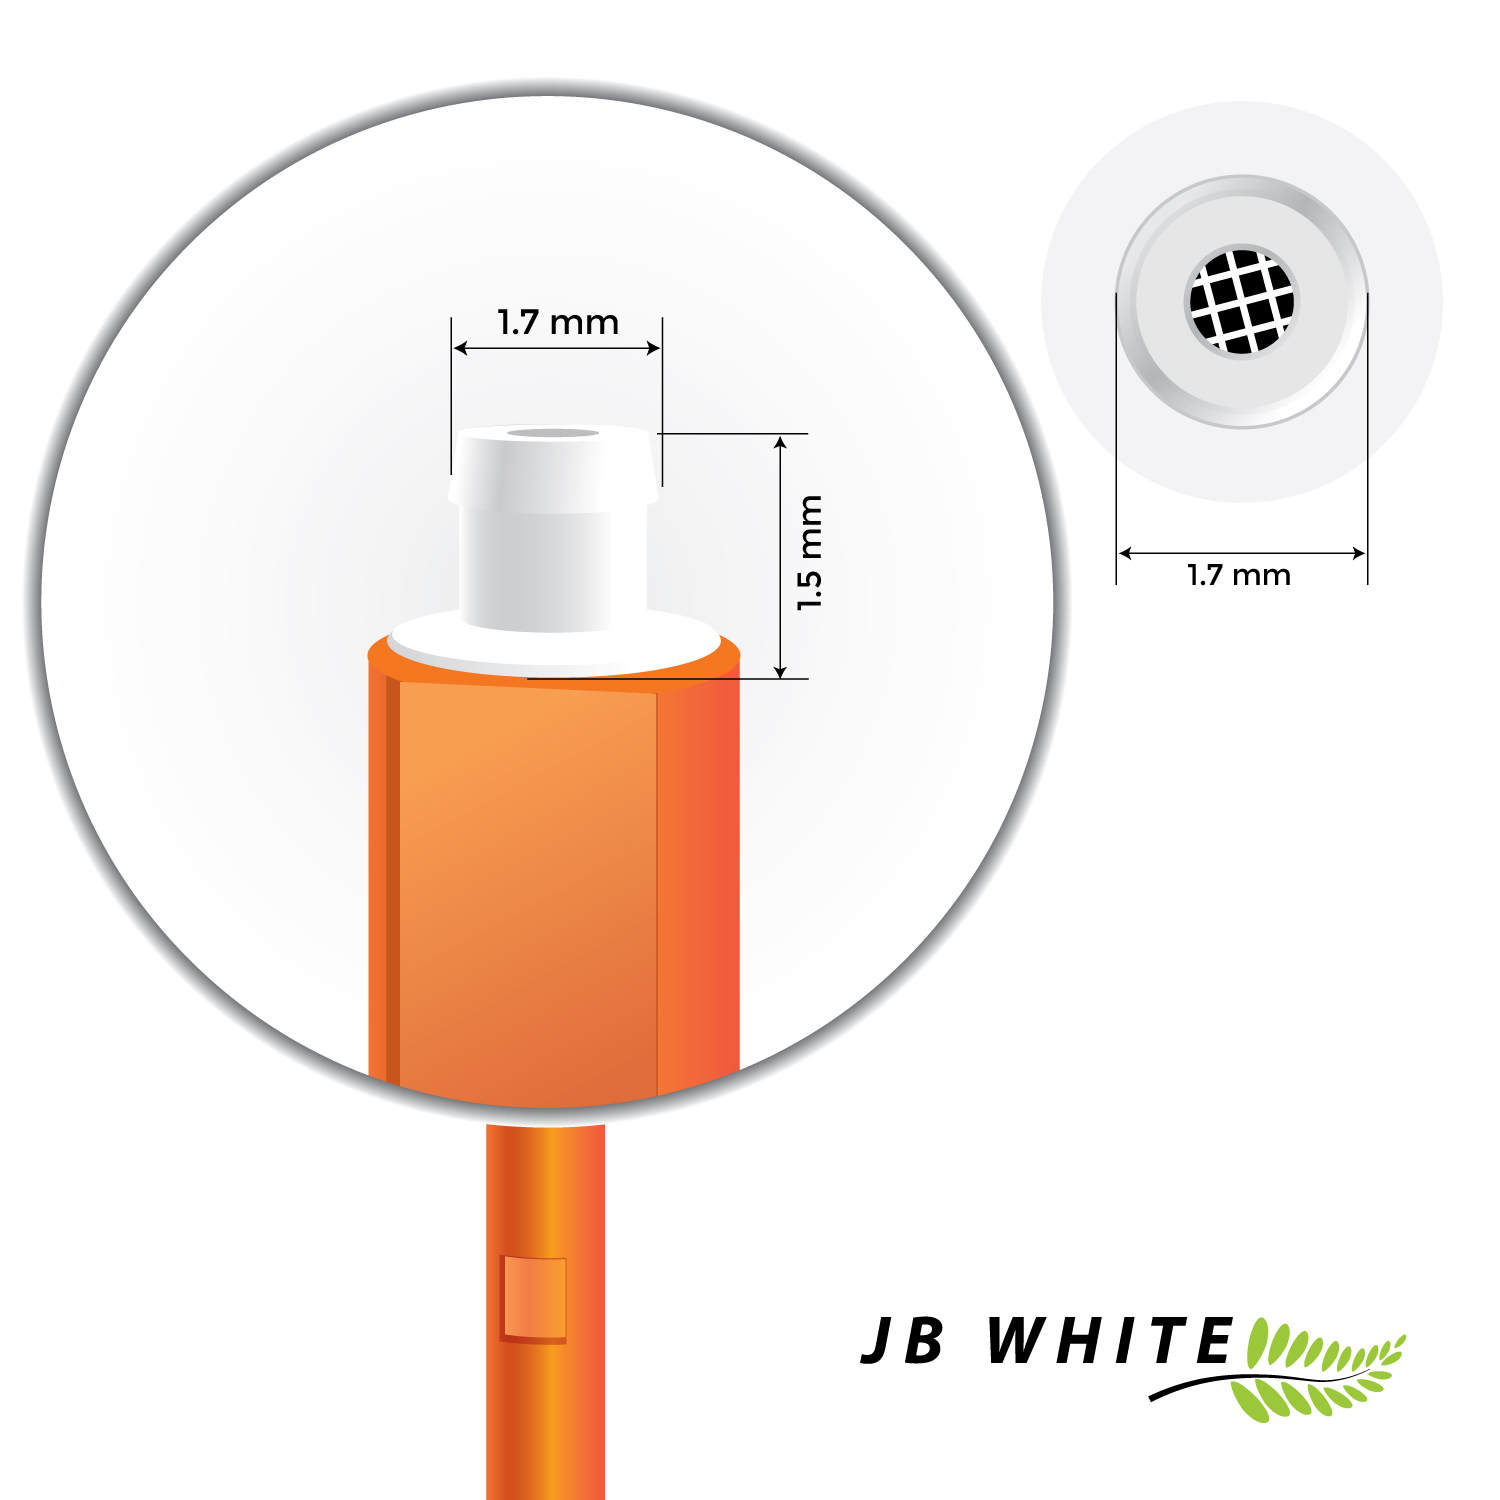 JB WHITE 48x Cerumenfilter x Cerumenfilter Hörgeräte Hear bitte messen) Hörgeräte / (1,5 mm für für 1,7 und Clear - Starkey KIND evoR evo